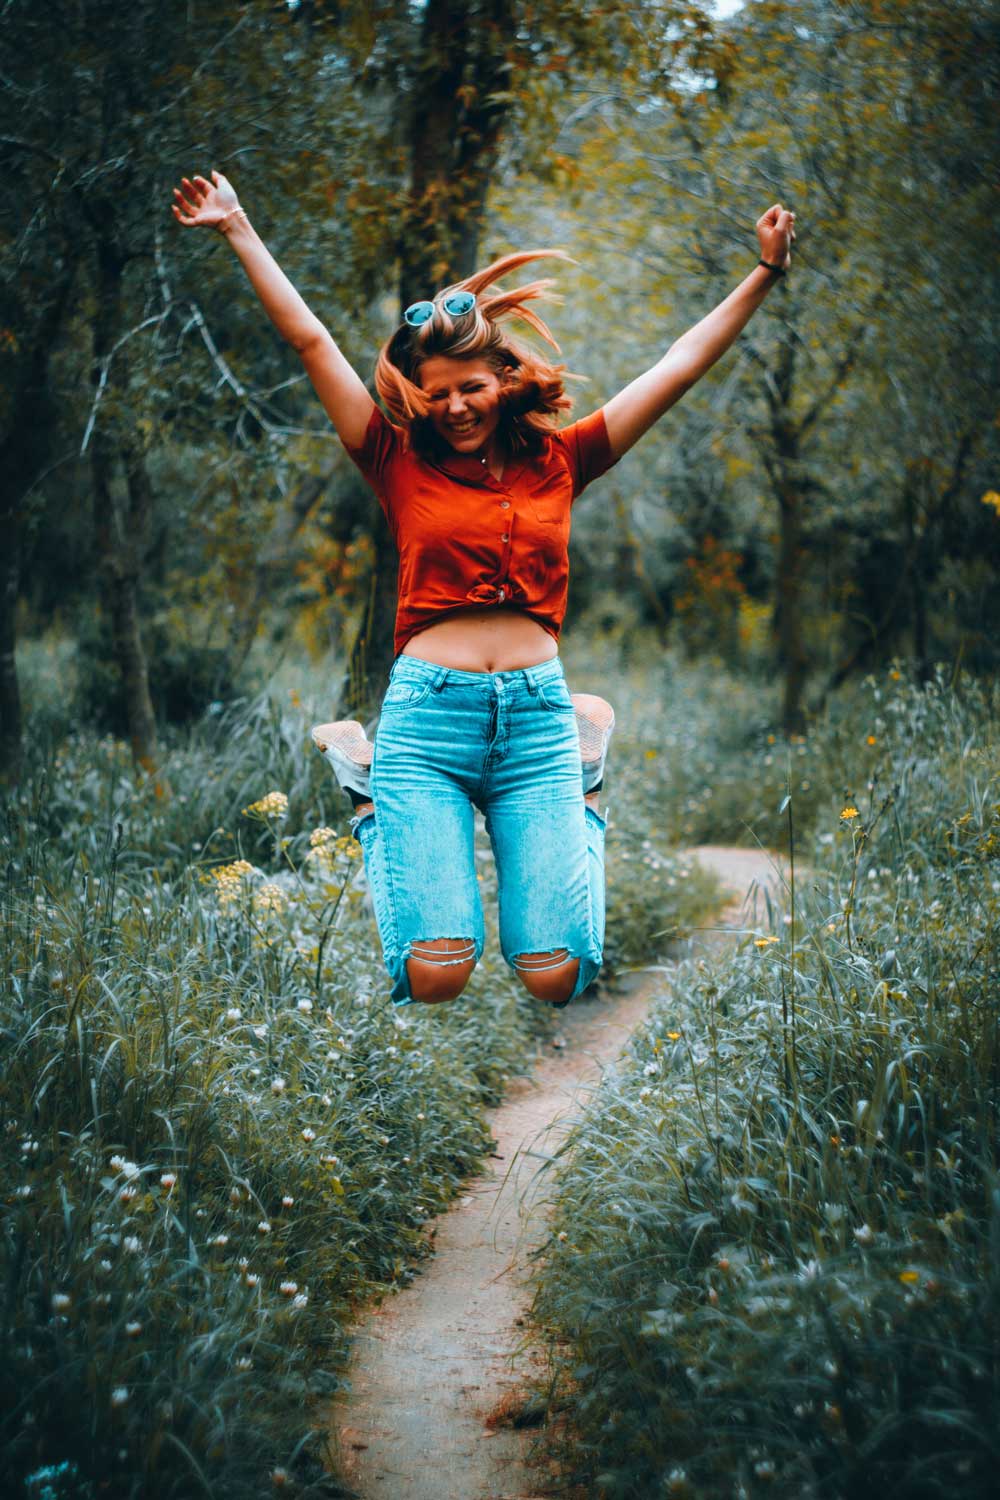 Nainen farkuissa ja punaisessa t-paidassa hyppää ilmaan innoissaan metsäpolulla ja ojentaa käsiään kohti taivasta.